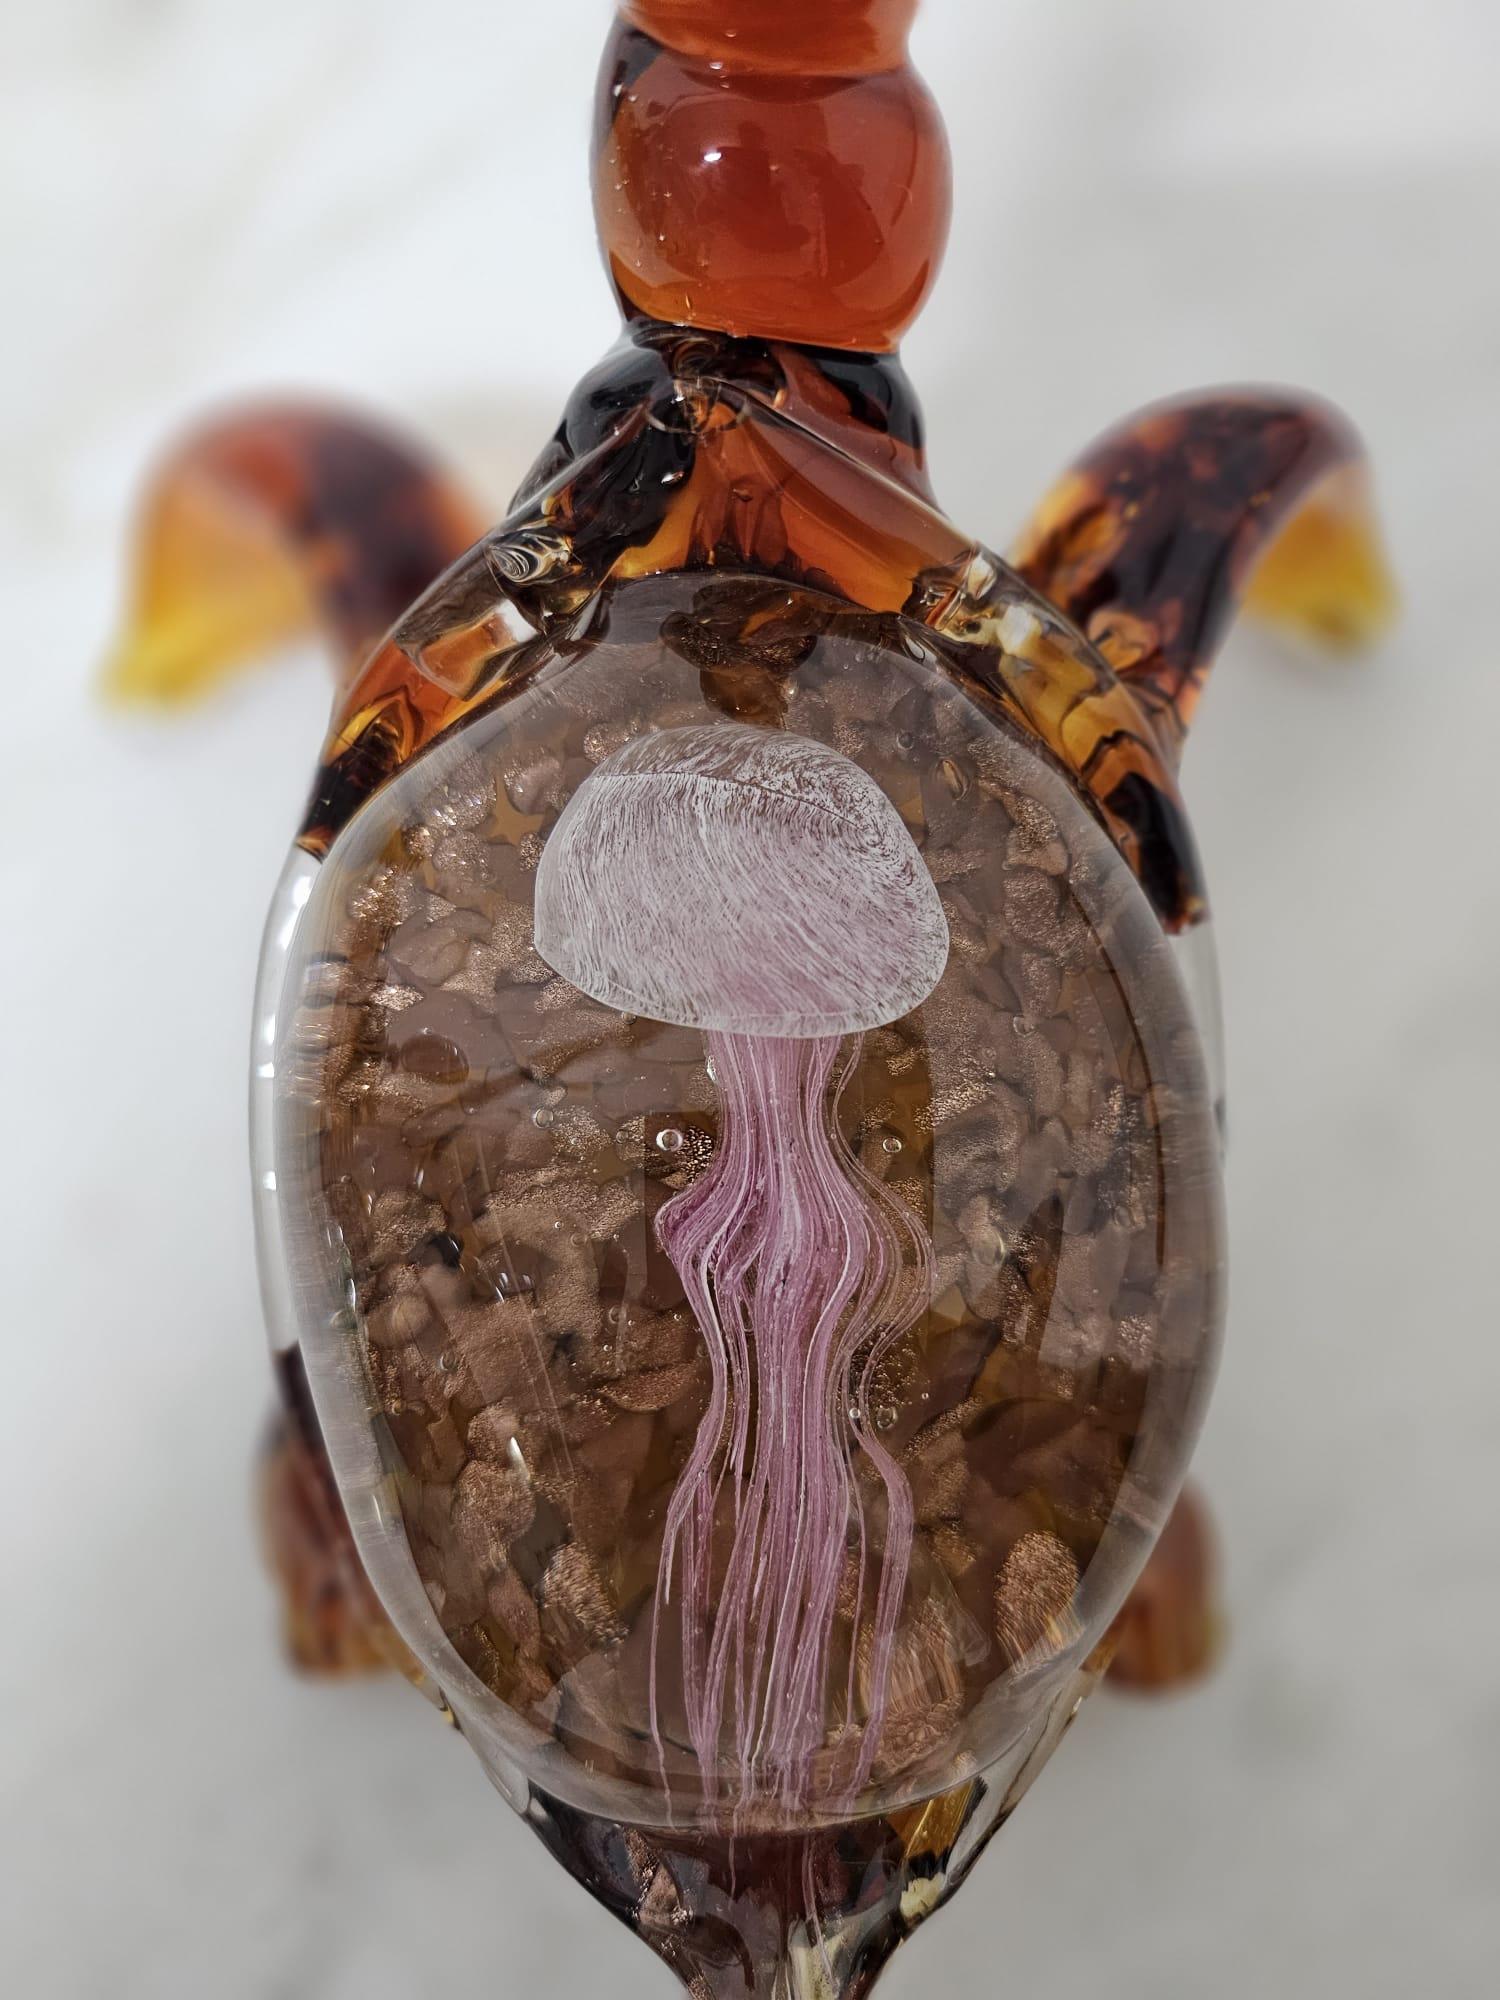 Tortue en verre de Murano, méduse à l'intérieur de la carapace, 1970
Objet polychrome très particulier en verre de Murano. Tortue avec une méduse à l'intérieur de sa carapace.
Excellent état. 

Nous garantissons un emballage adéquat et nous